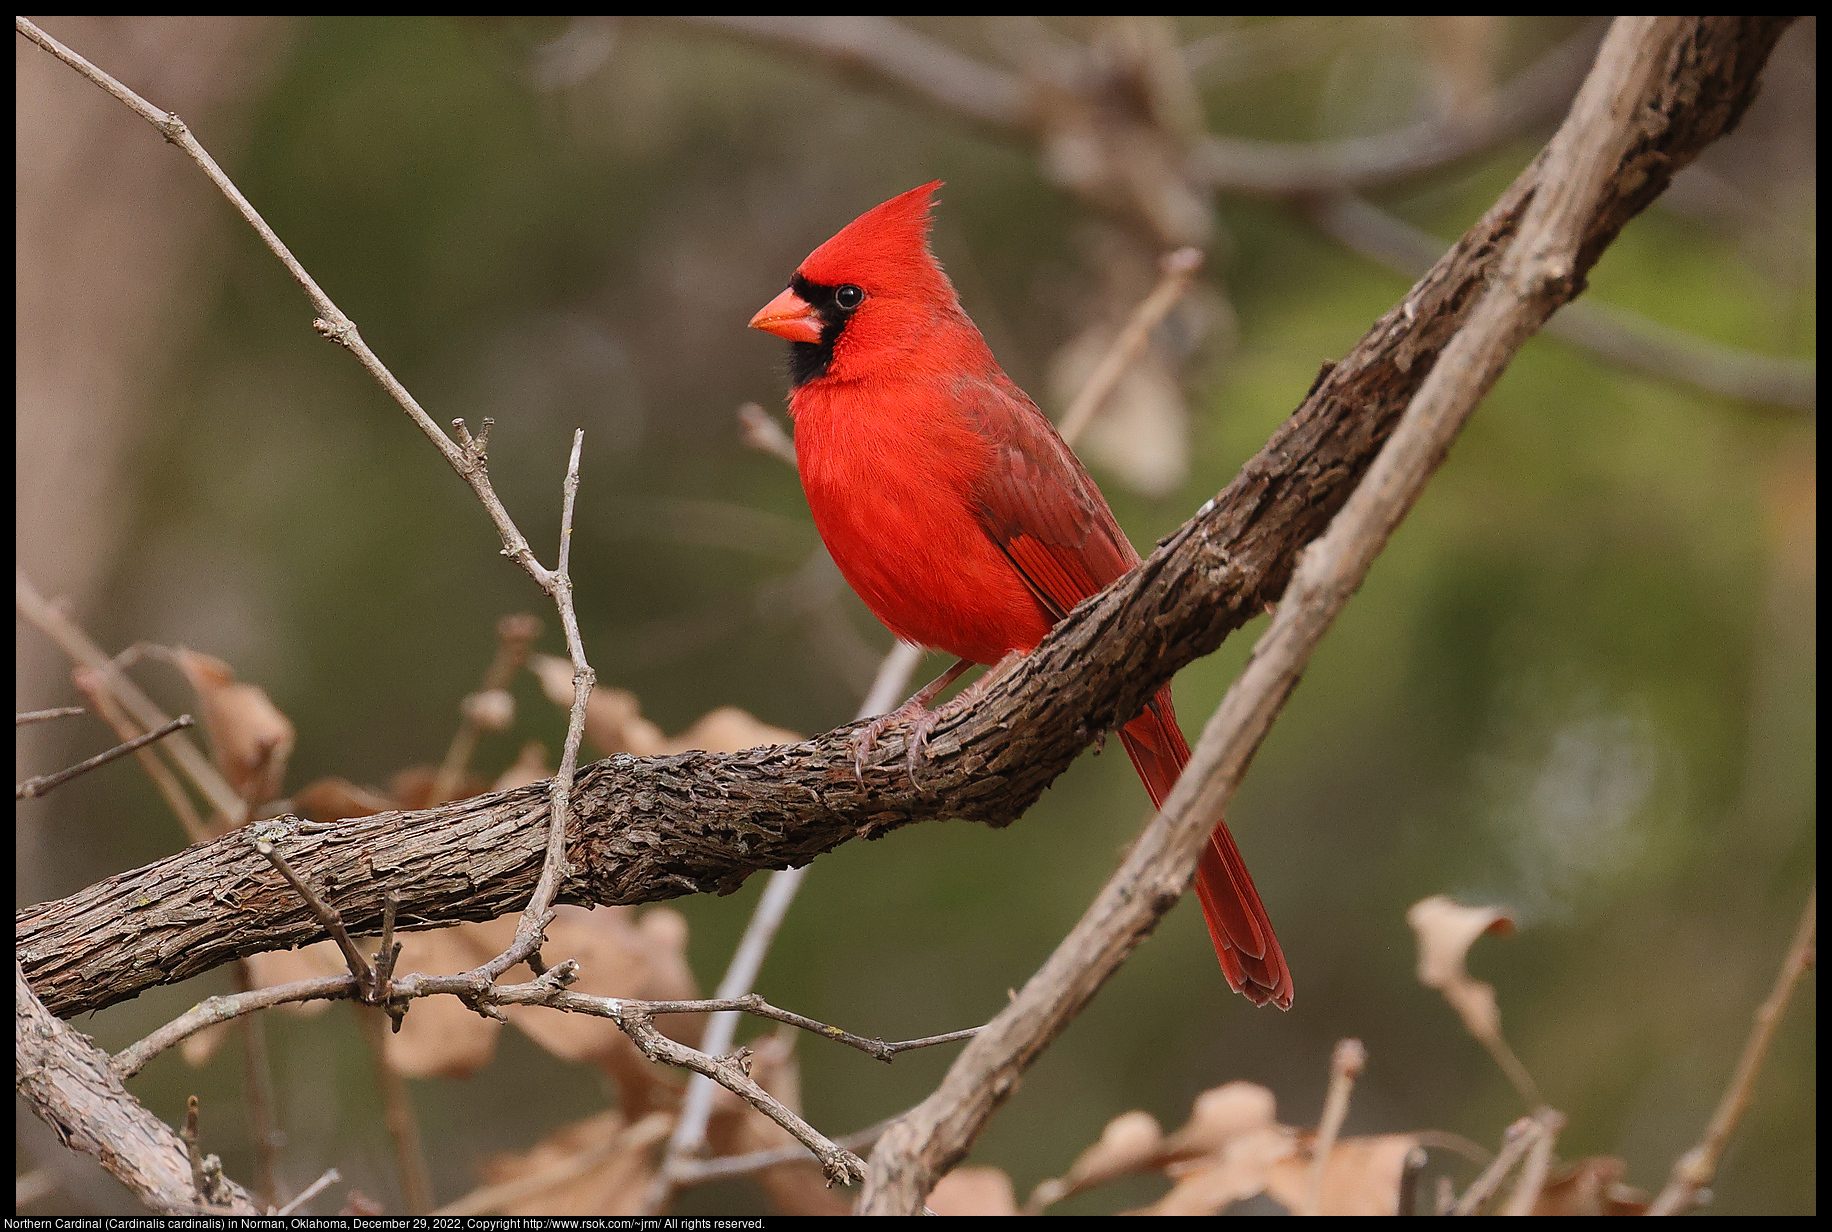 Northern Cardinal (Cardinalis cardinalis) in Norman, Oklahoma, December 29, 2022